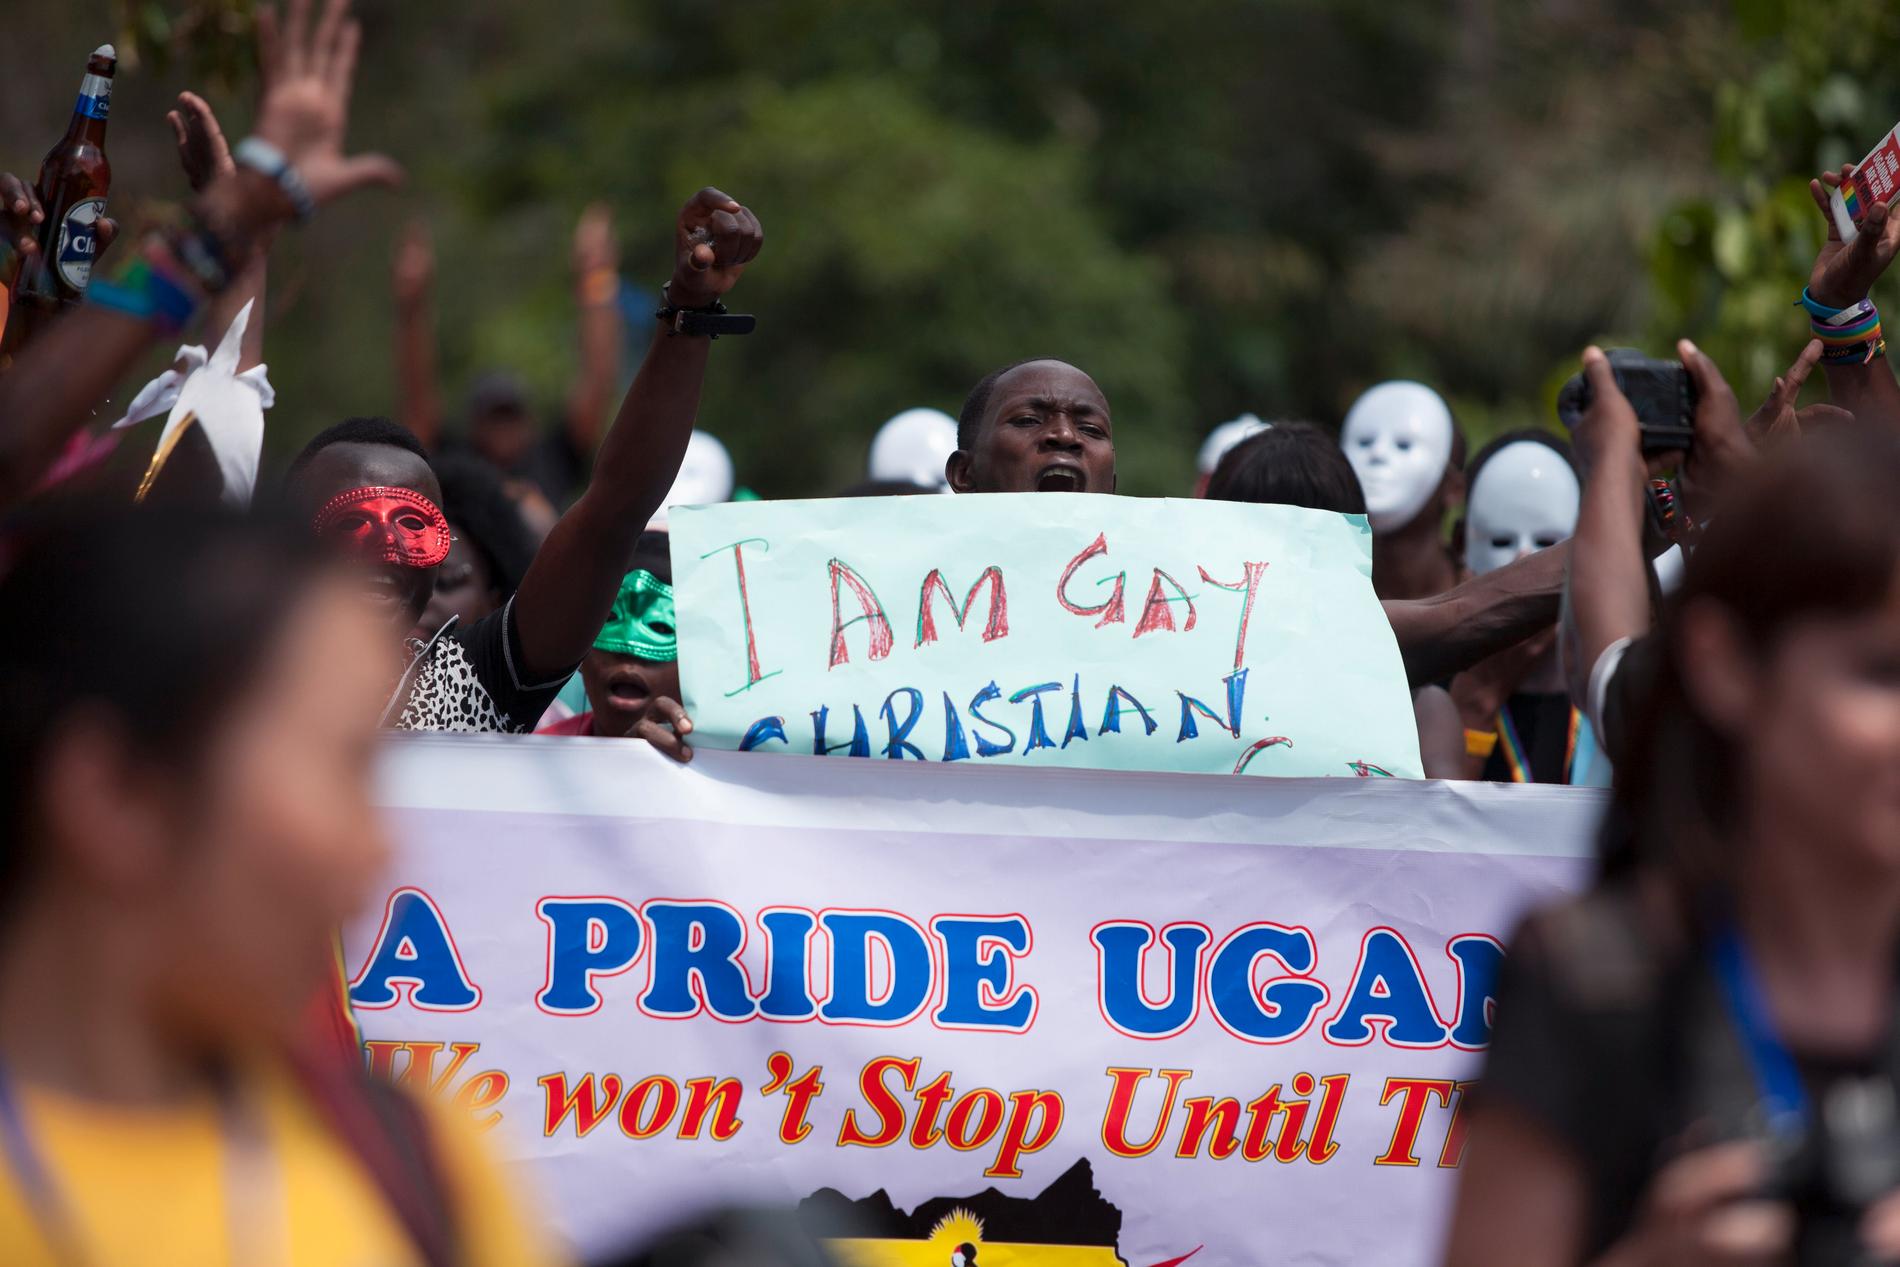 Pride är ett utsatt evenemang i Uganda, polis har flera gånger gjort nedslag mot hbtq-aktivister som deltagit. Bilden togs vid en pridemanifestation i Entebbe 2014.